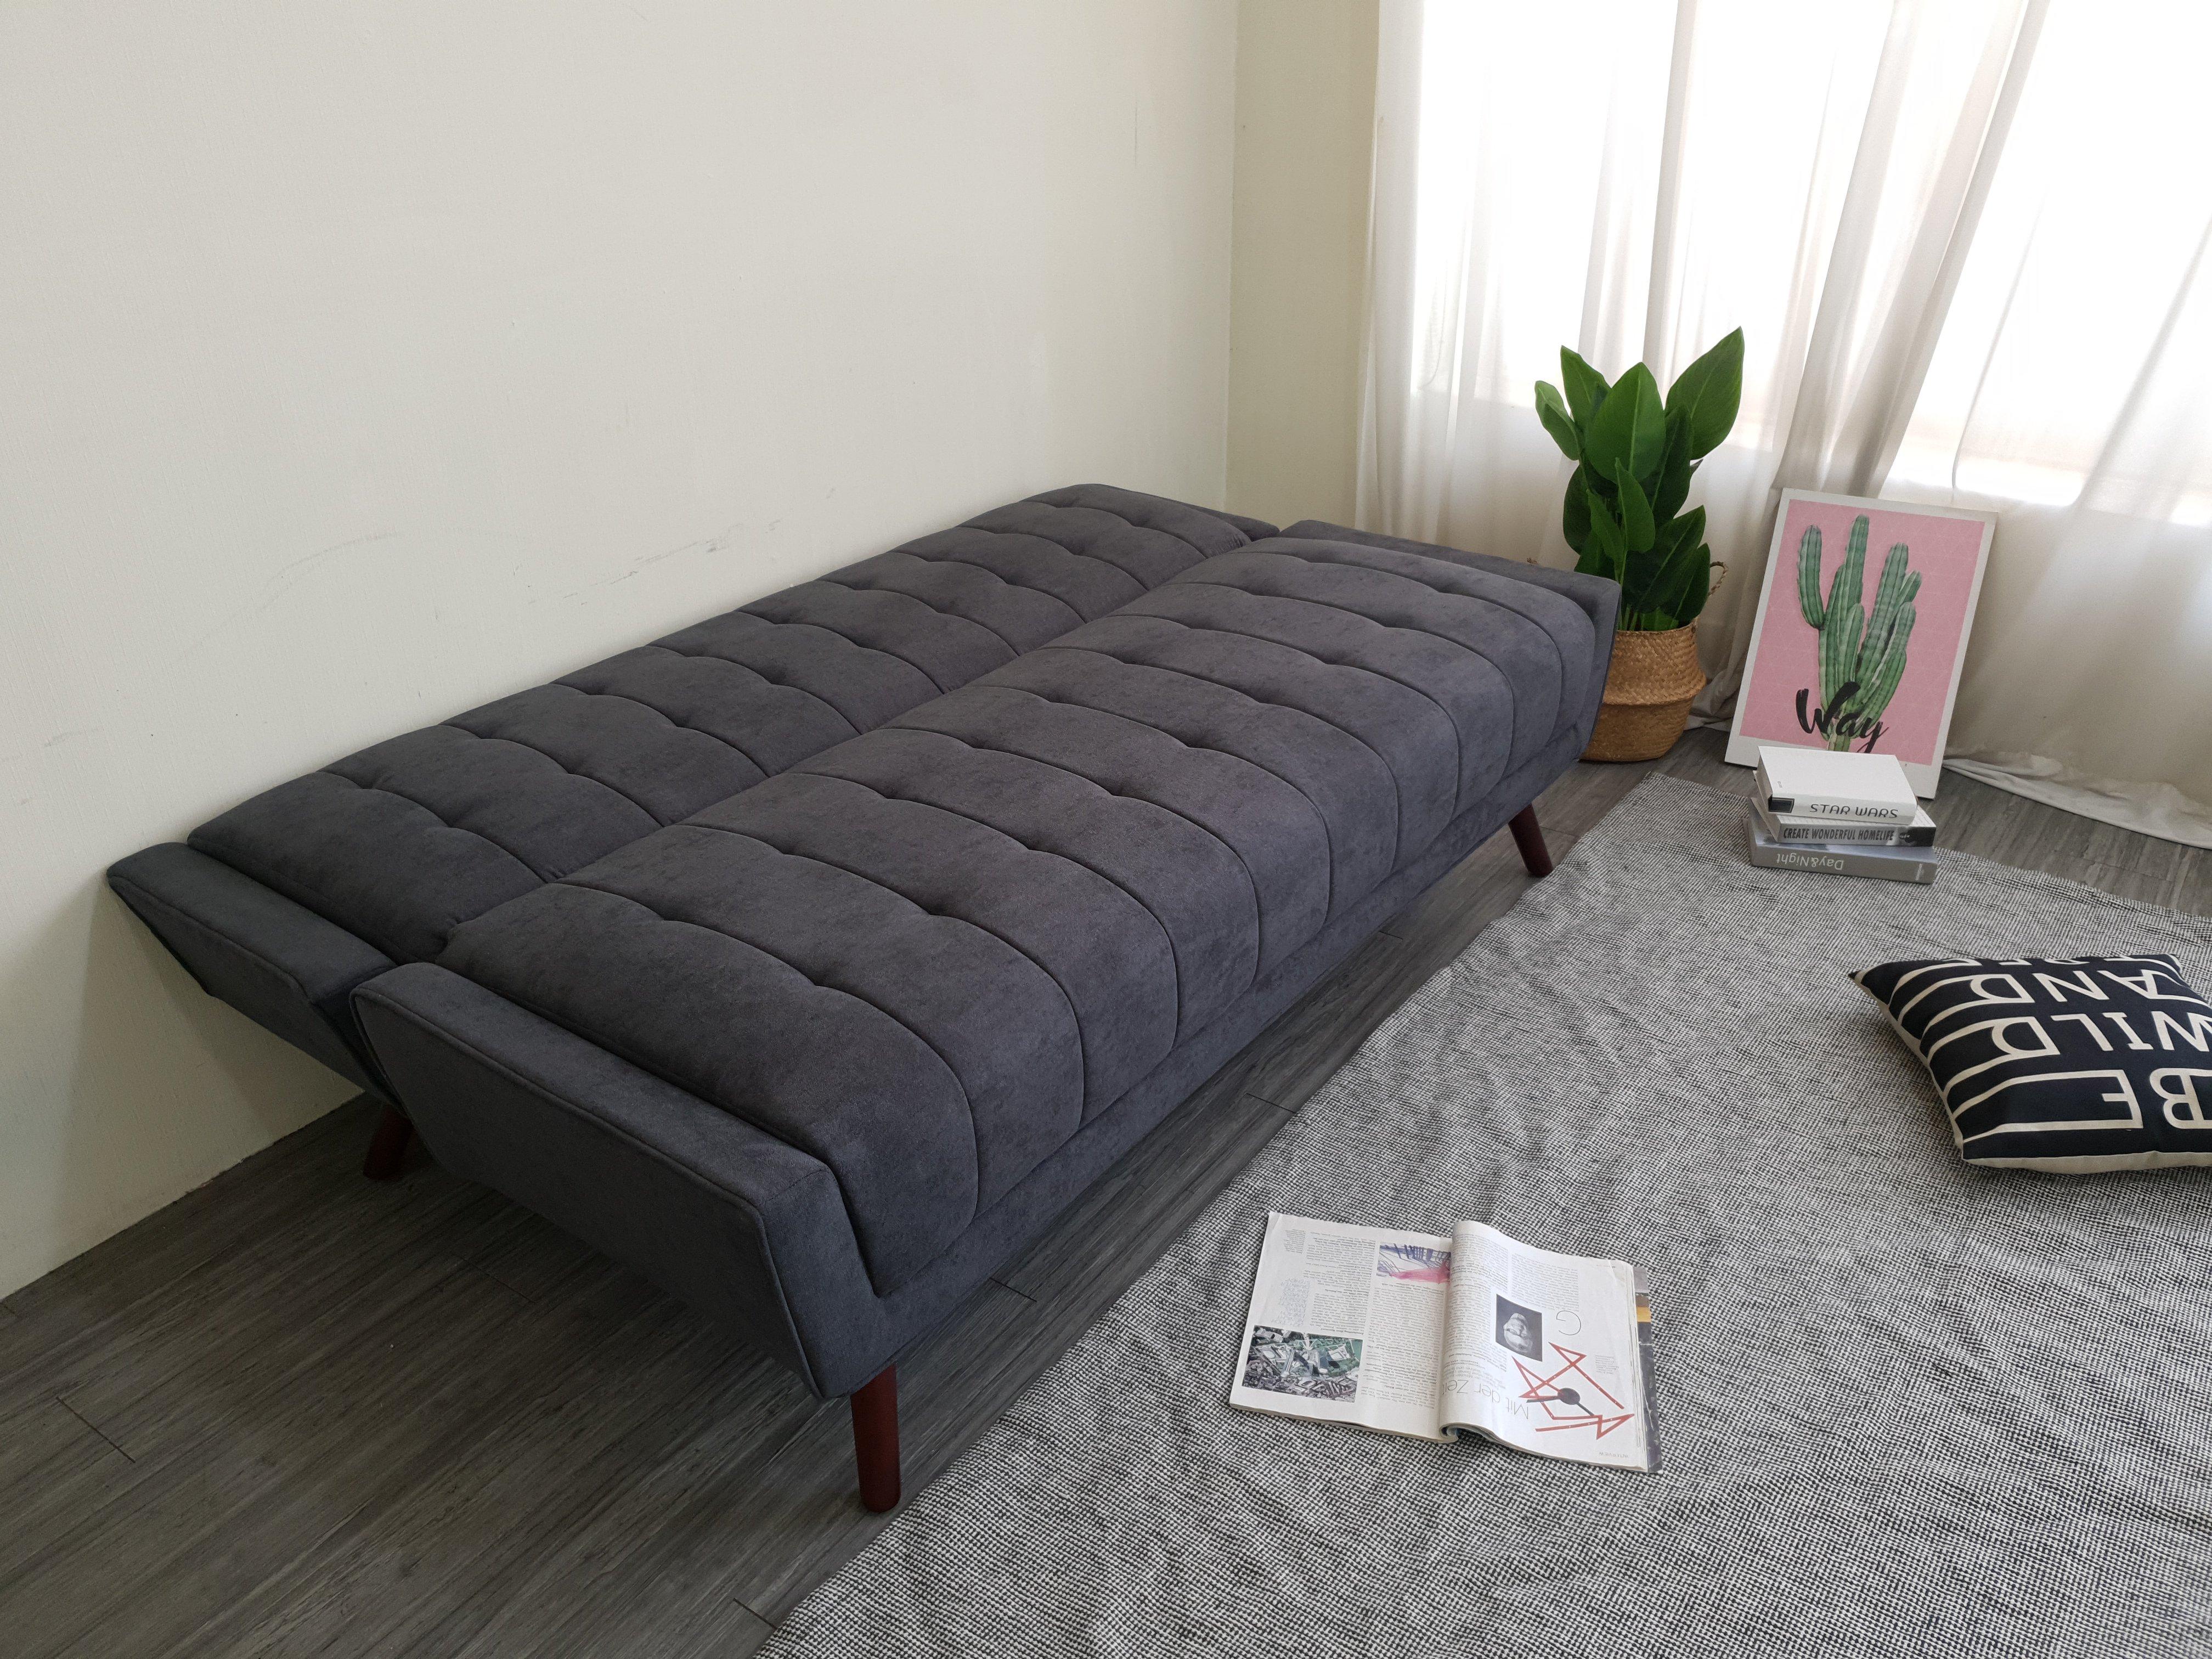 Sofa bed Juno sofa hiện đại màu xám, xanh, caro